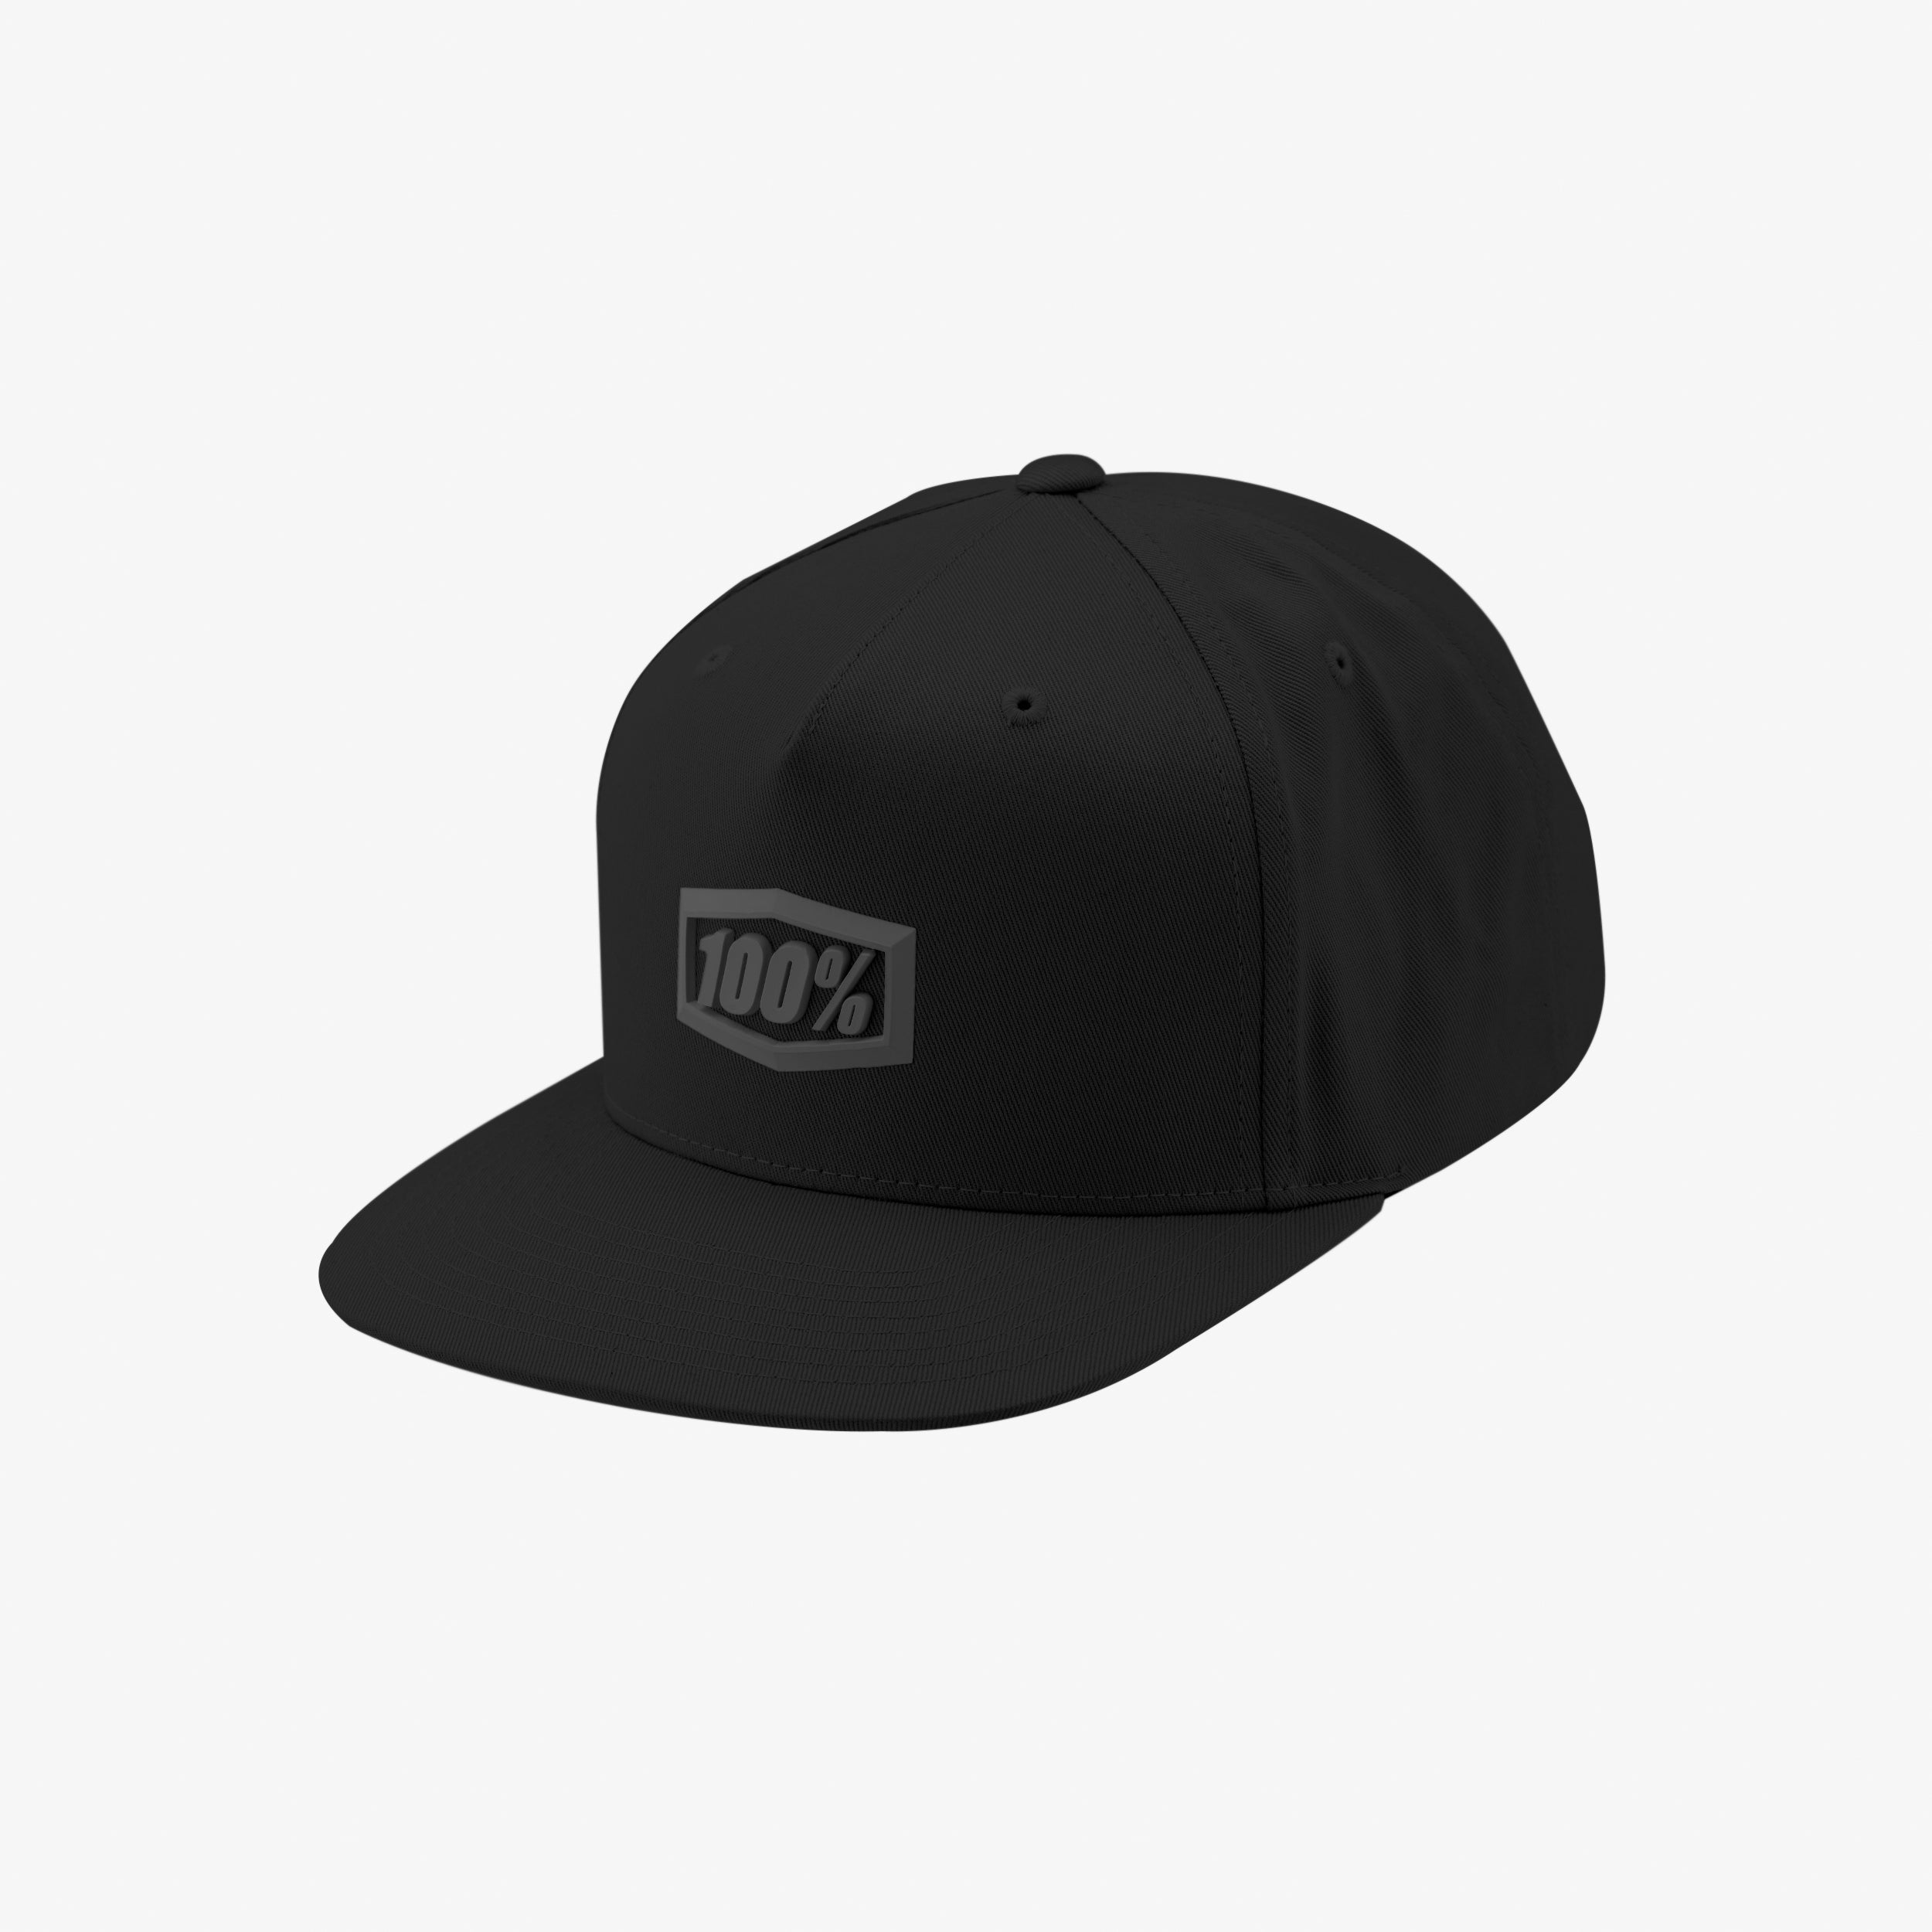 ENTERPRISE Snapback Hat Black/Charcoal Speck